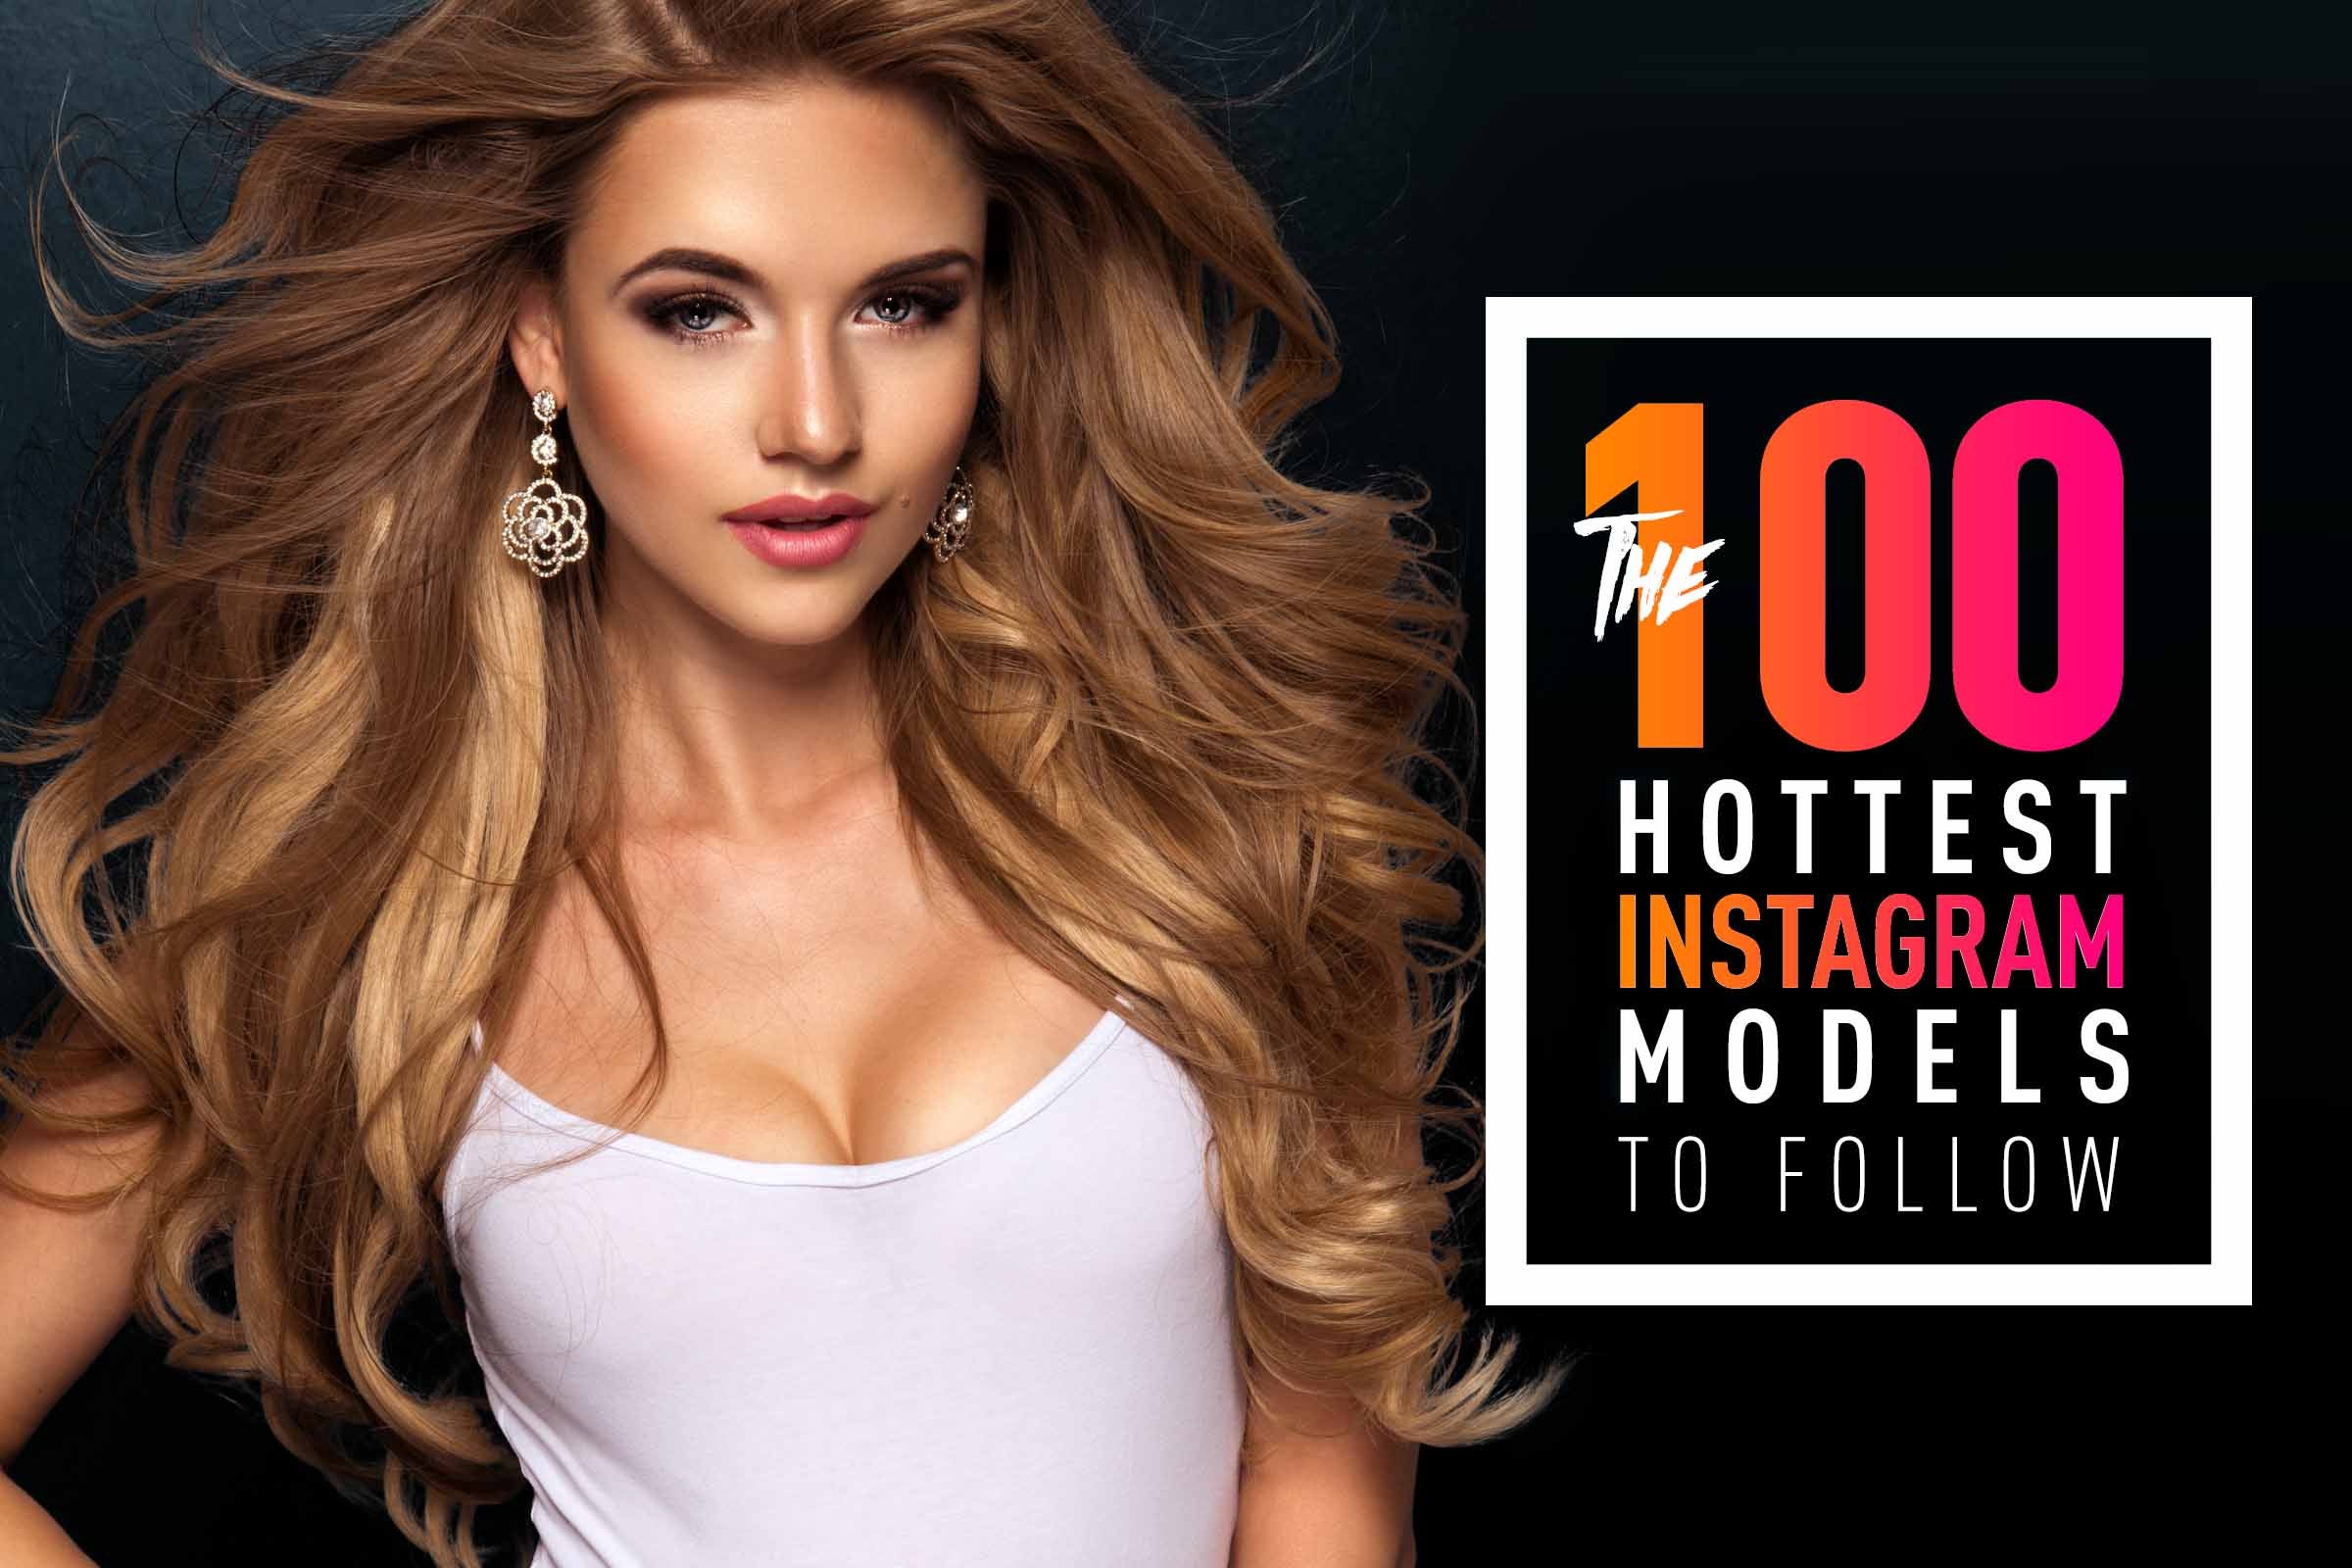 100 hottest instagram models